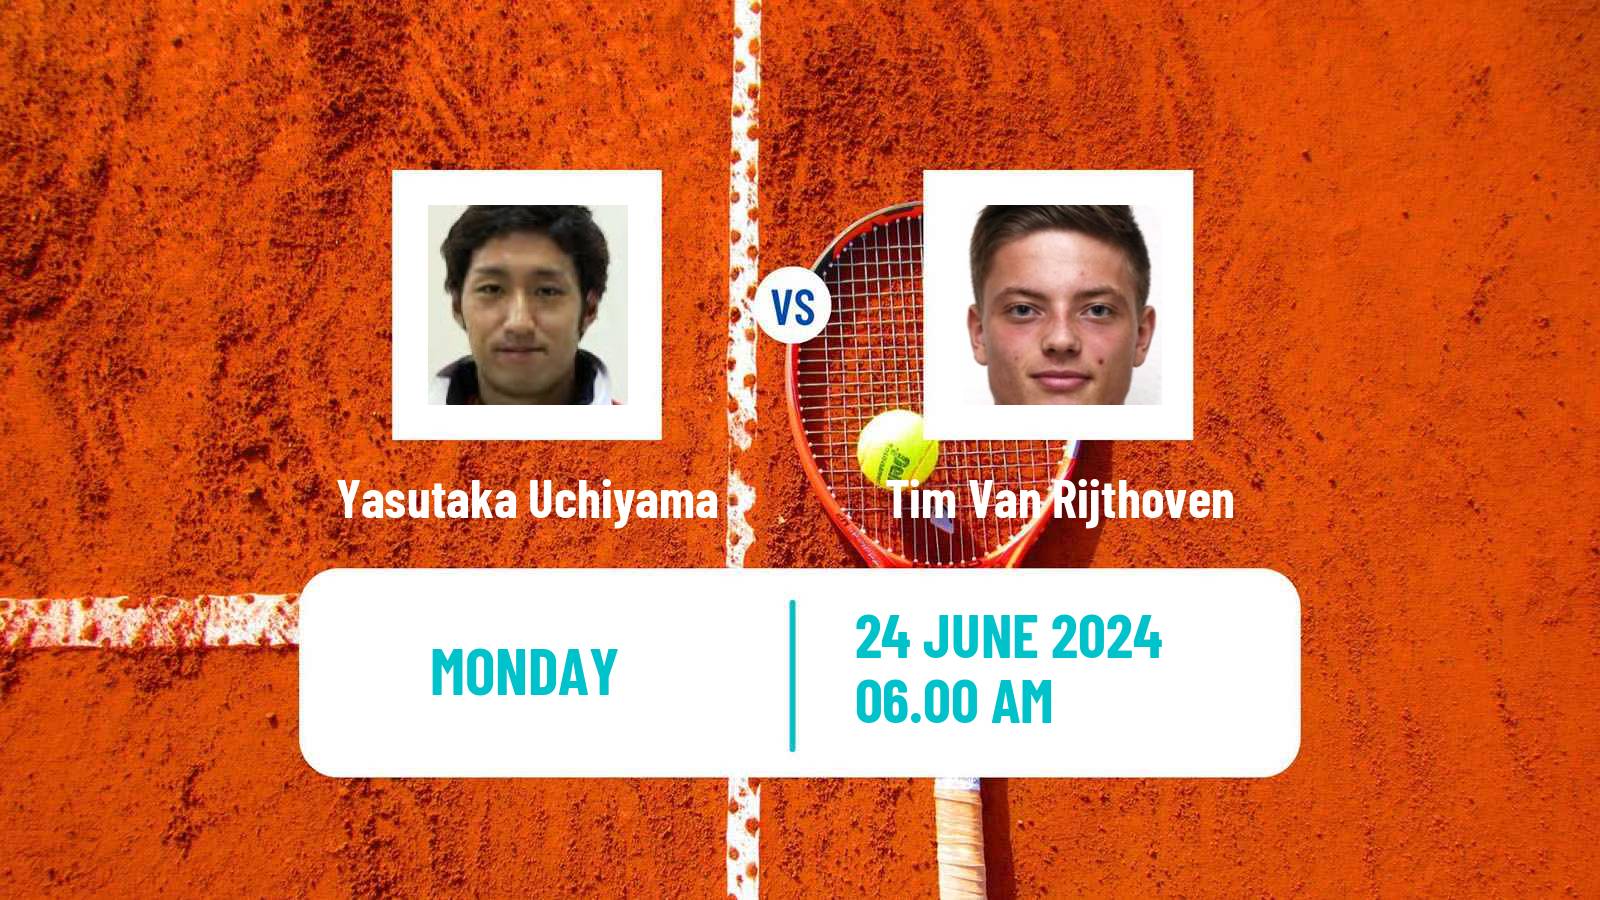 Tennis ATP Wimbledon Yasutaka Uchiyama - Tim Van Rijthoven